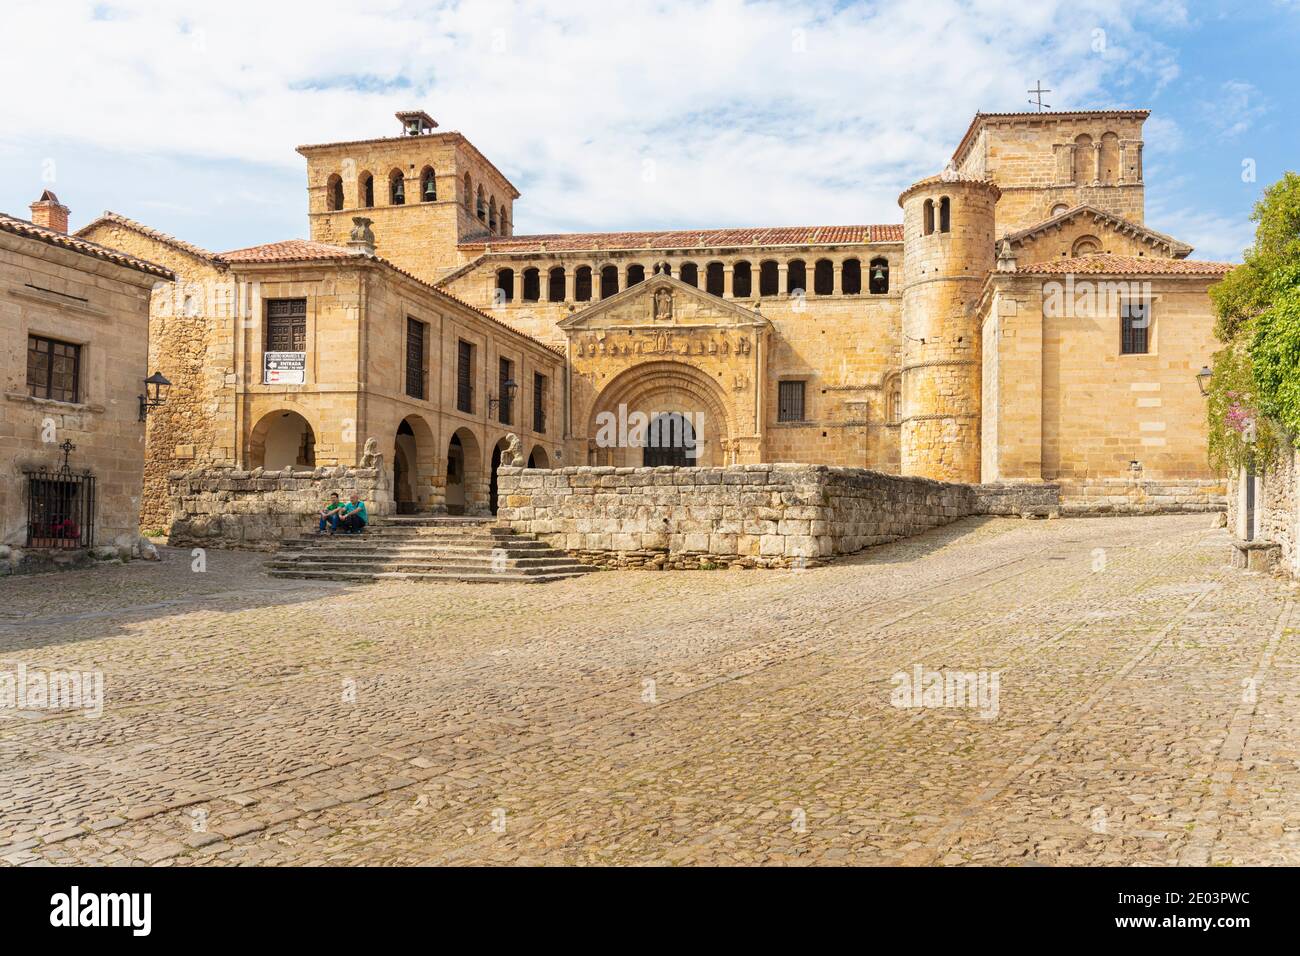 L'église romane de la Colegiata, Santillana del Mar, Cantabrie, Espagne. Nom complet: Colegiata de Santa Juliana de Santillana del Mar. Banque D'Images